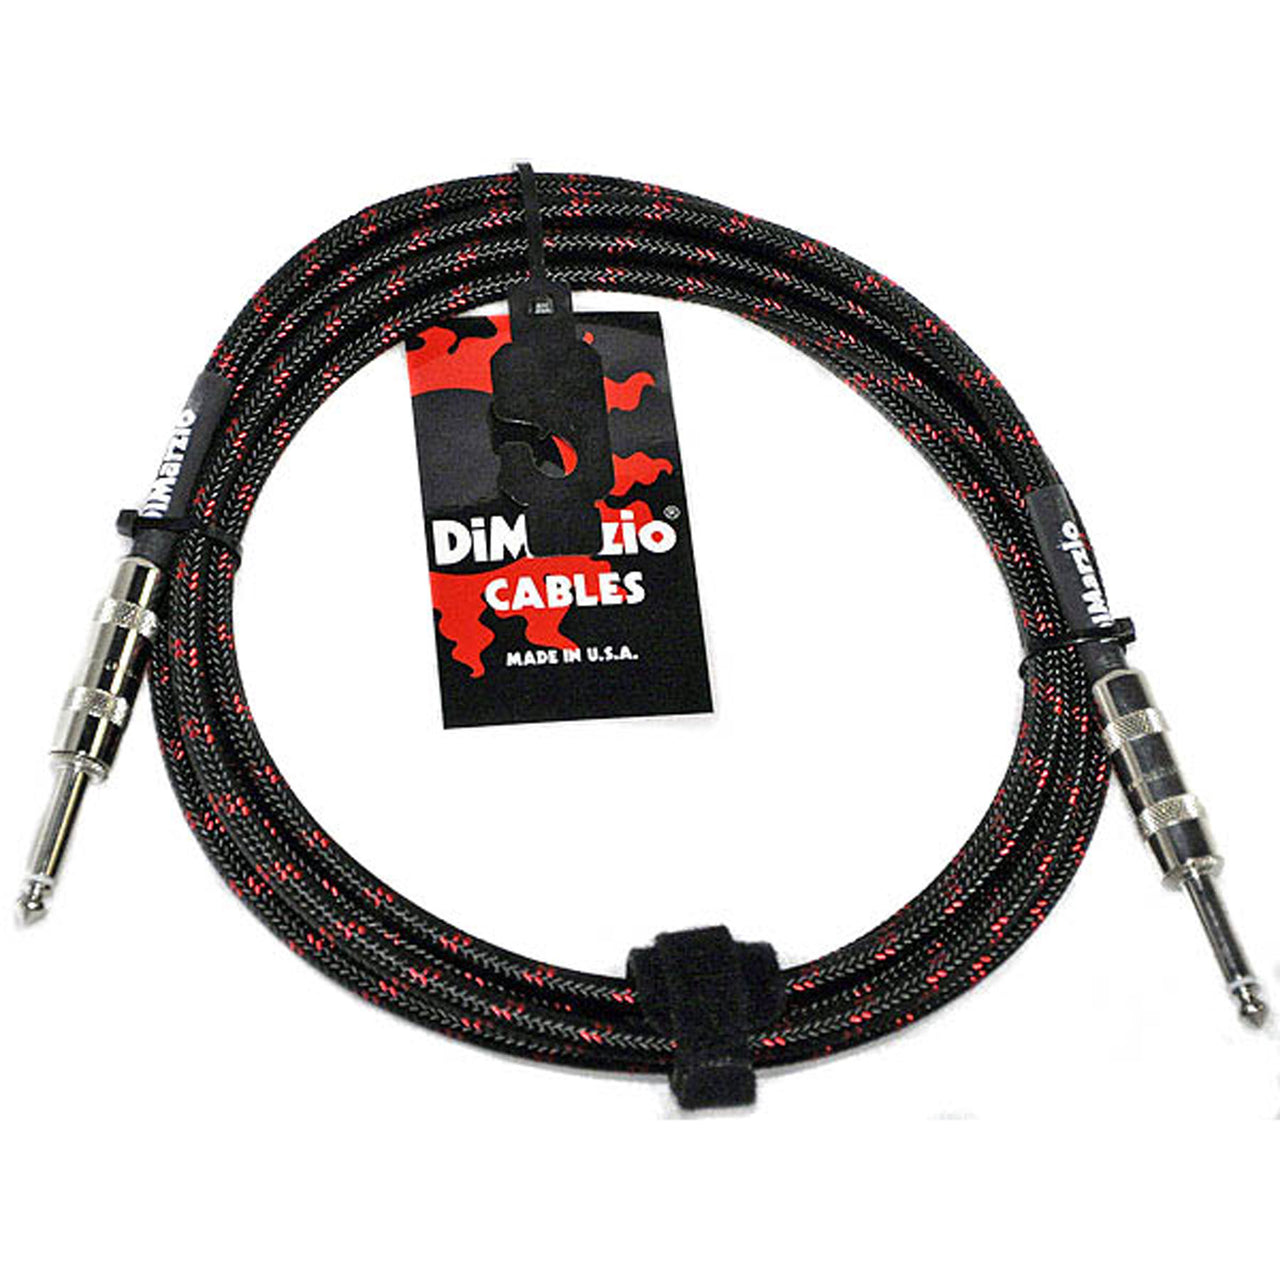 Cable Dimarzio Para Instrumento 3mts Negro/Rojo Ep1710ssbr